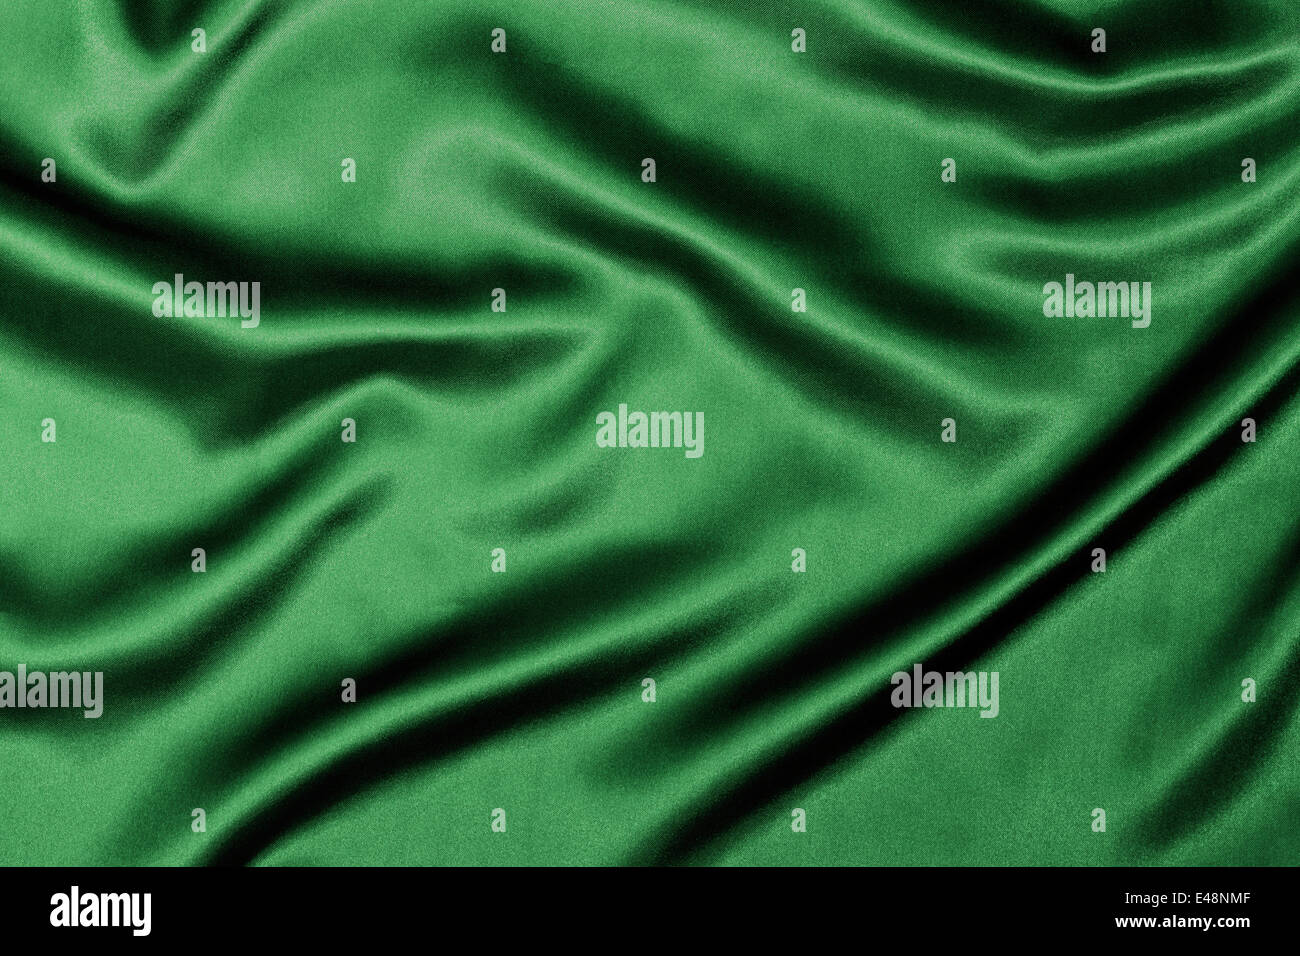 Texture de fond en soie verte avec des vagues ondulées pour améliorer l'éclat du tissu. Banque D'Images